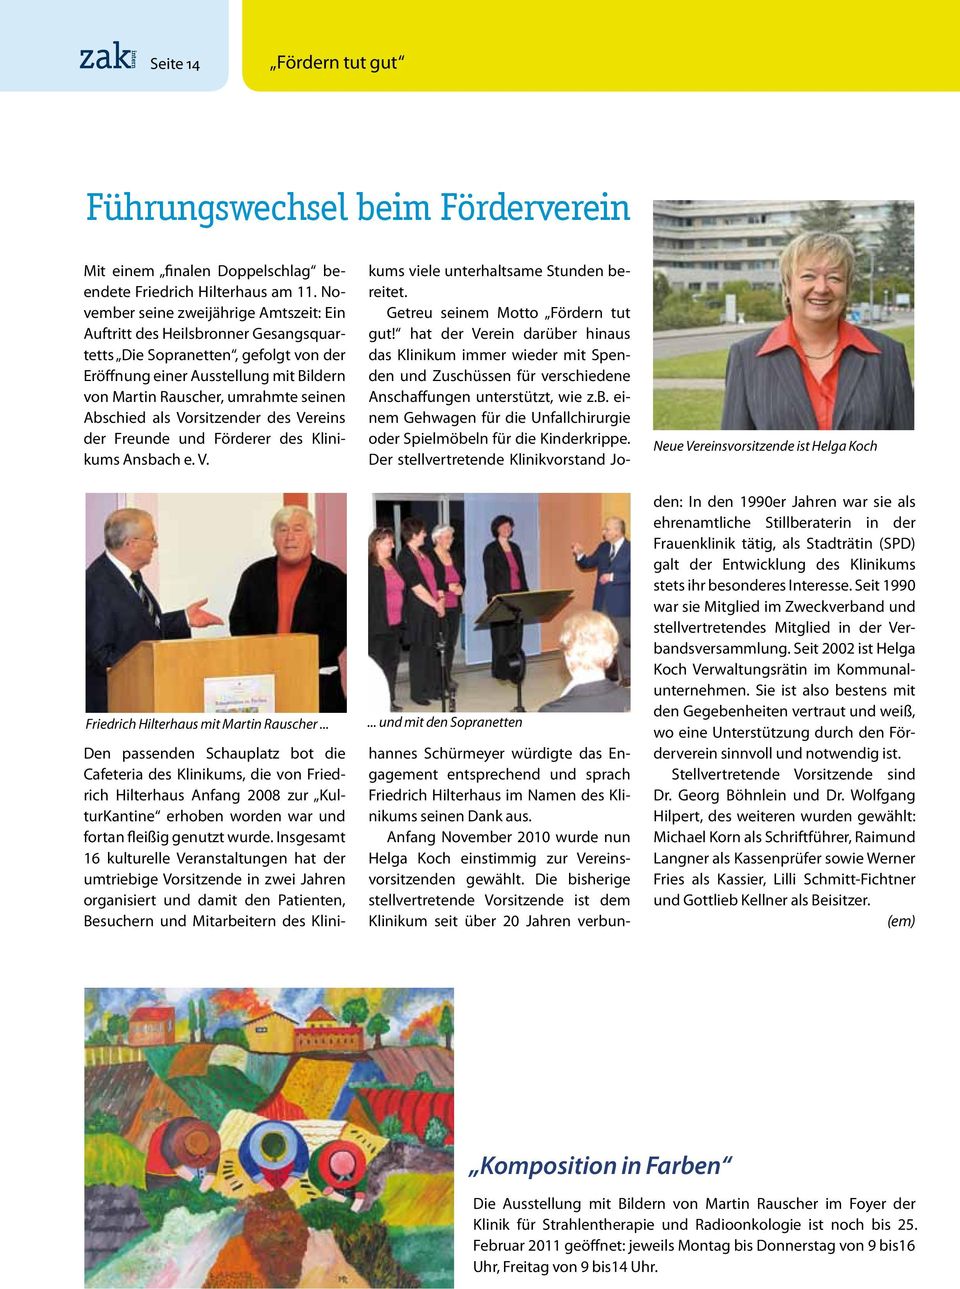 Abschied als Vorsitzender des Vereins der Freunde und Förderer des Klinikums Ansbach e. V. Friedrich Hilterhaus mit Martin Rauscher.